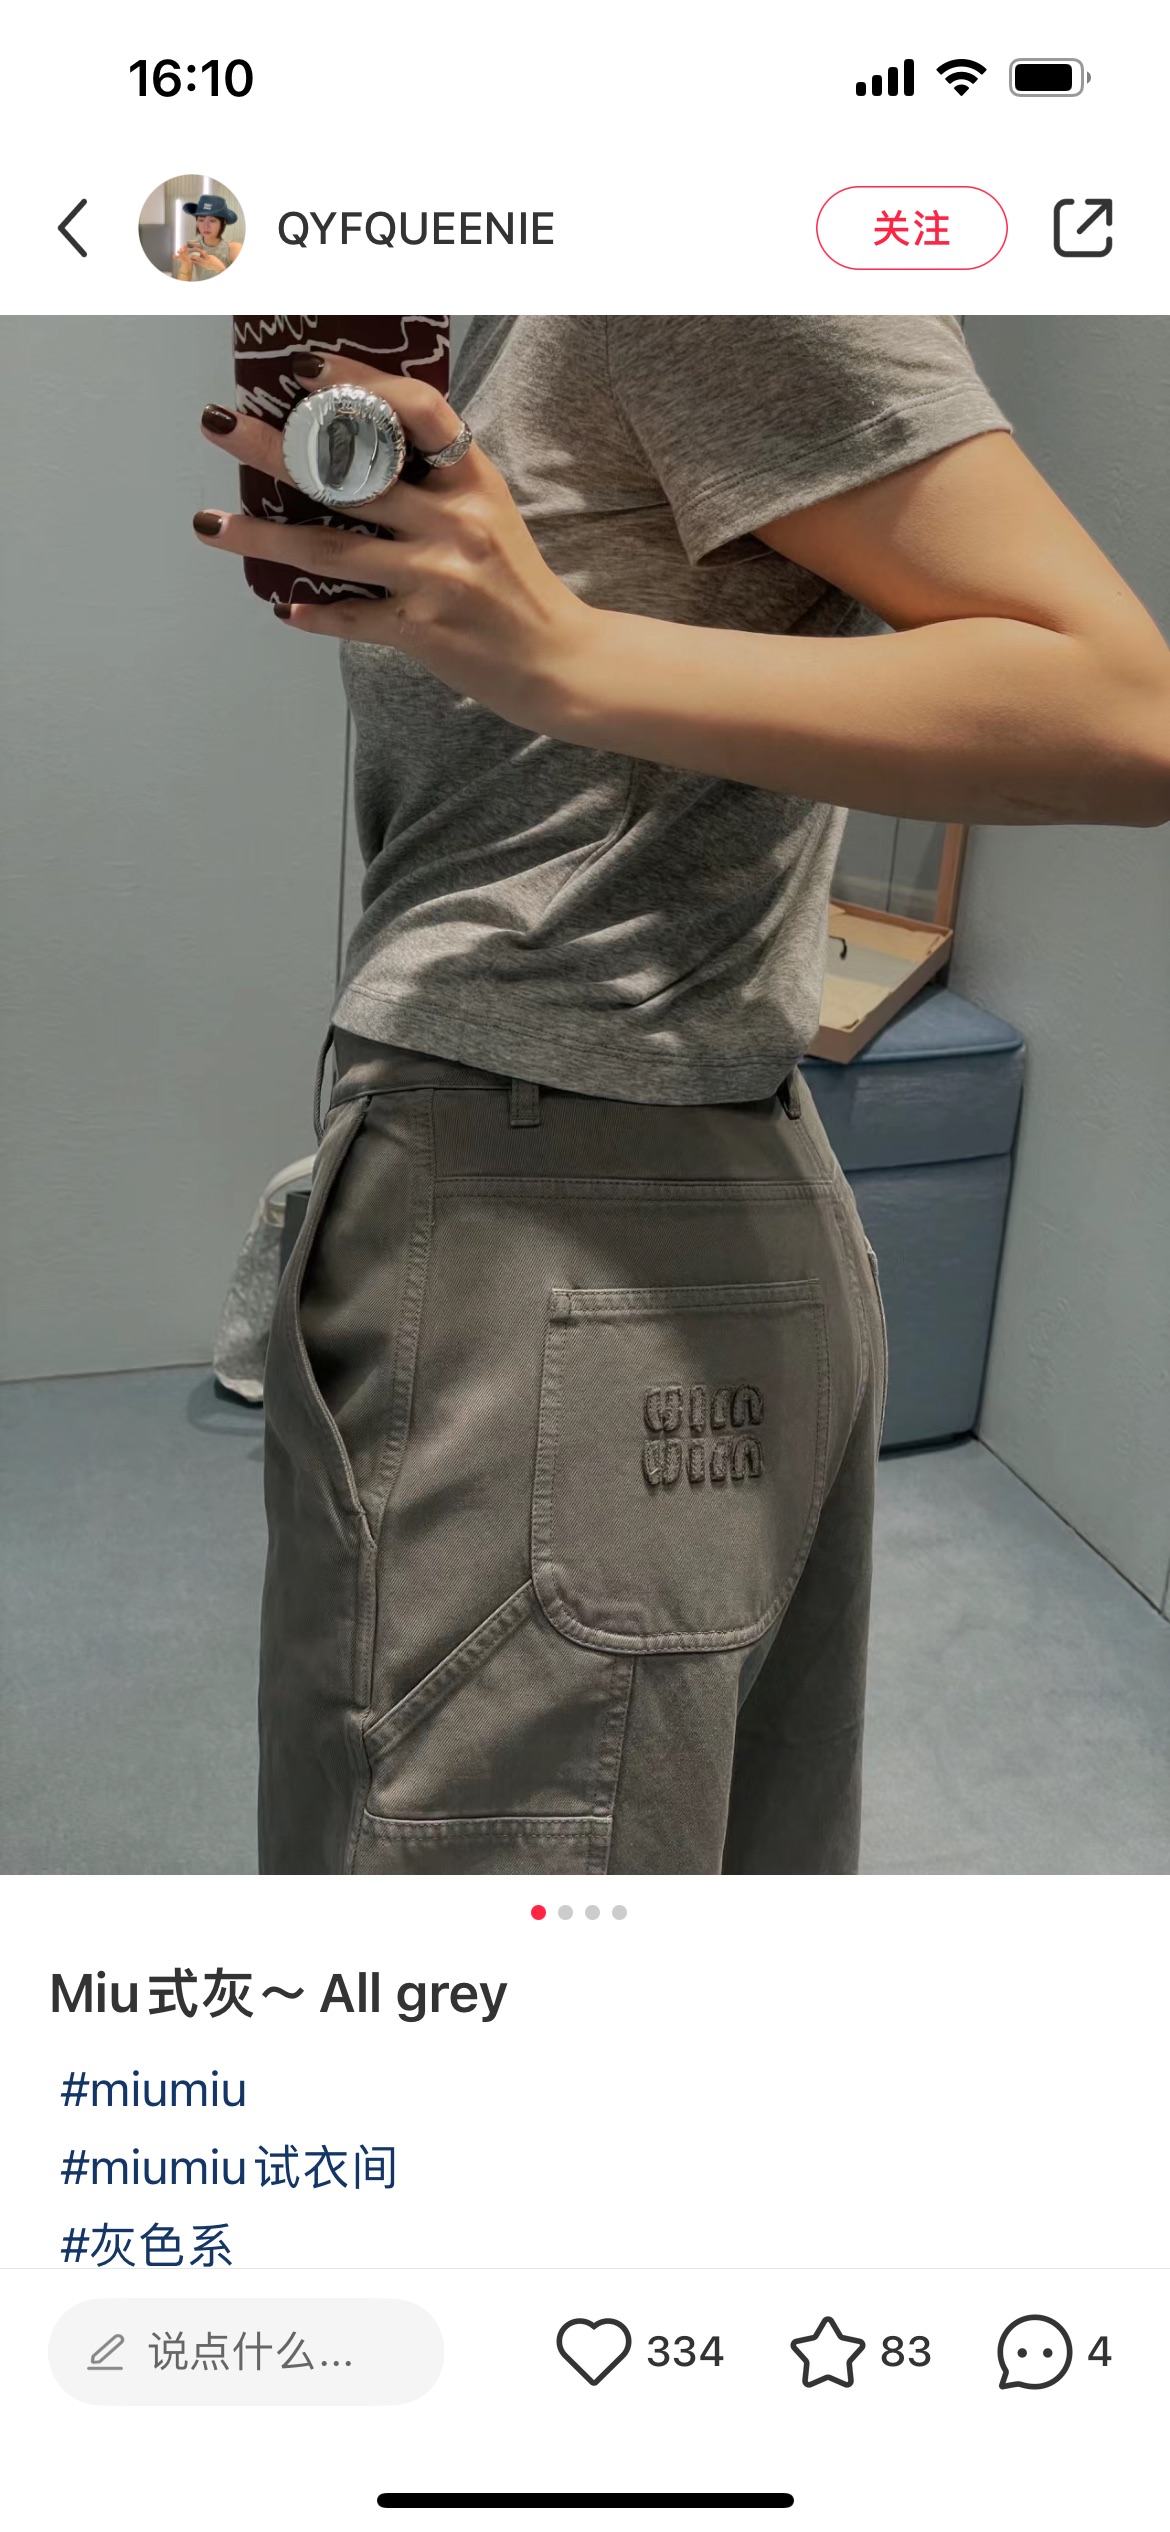 新款！最新MIU 24N 灰色洗水牛仔长裤。尺码:SML。Pzbdbs。